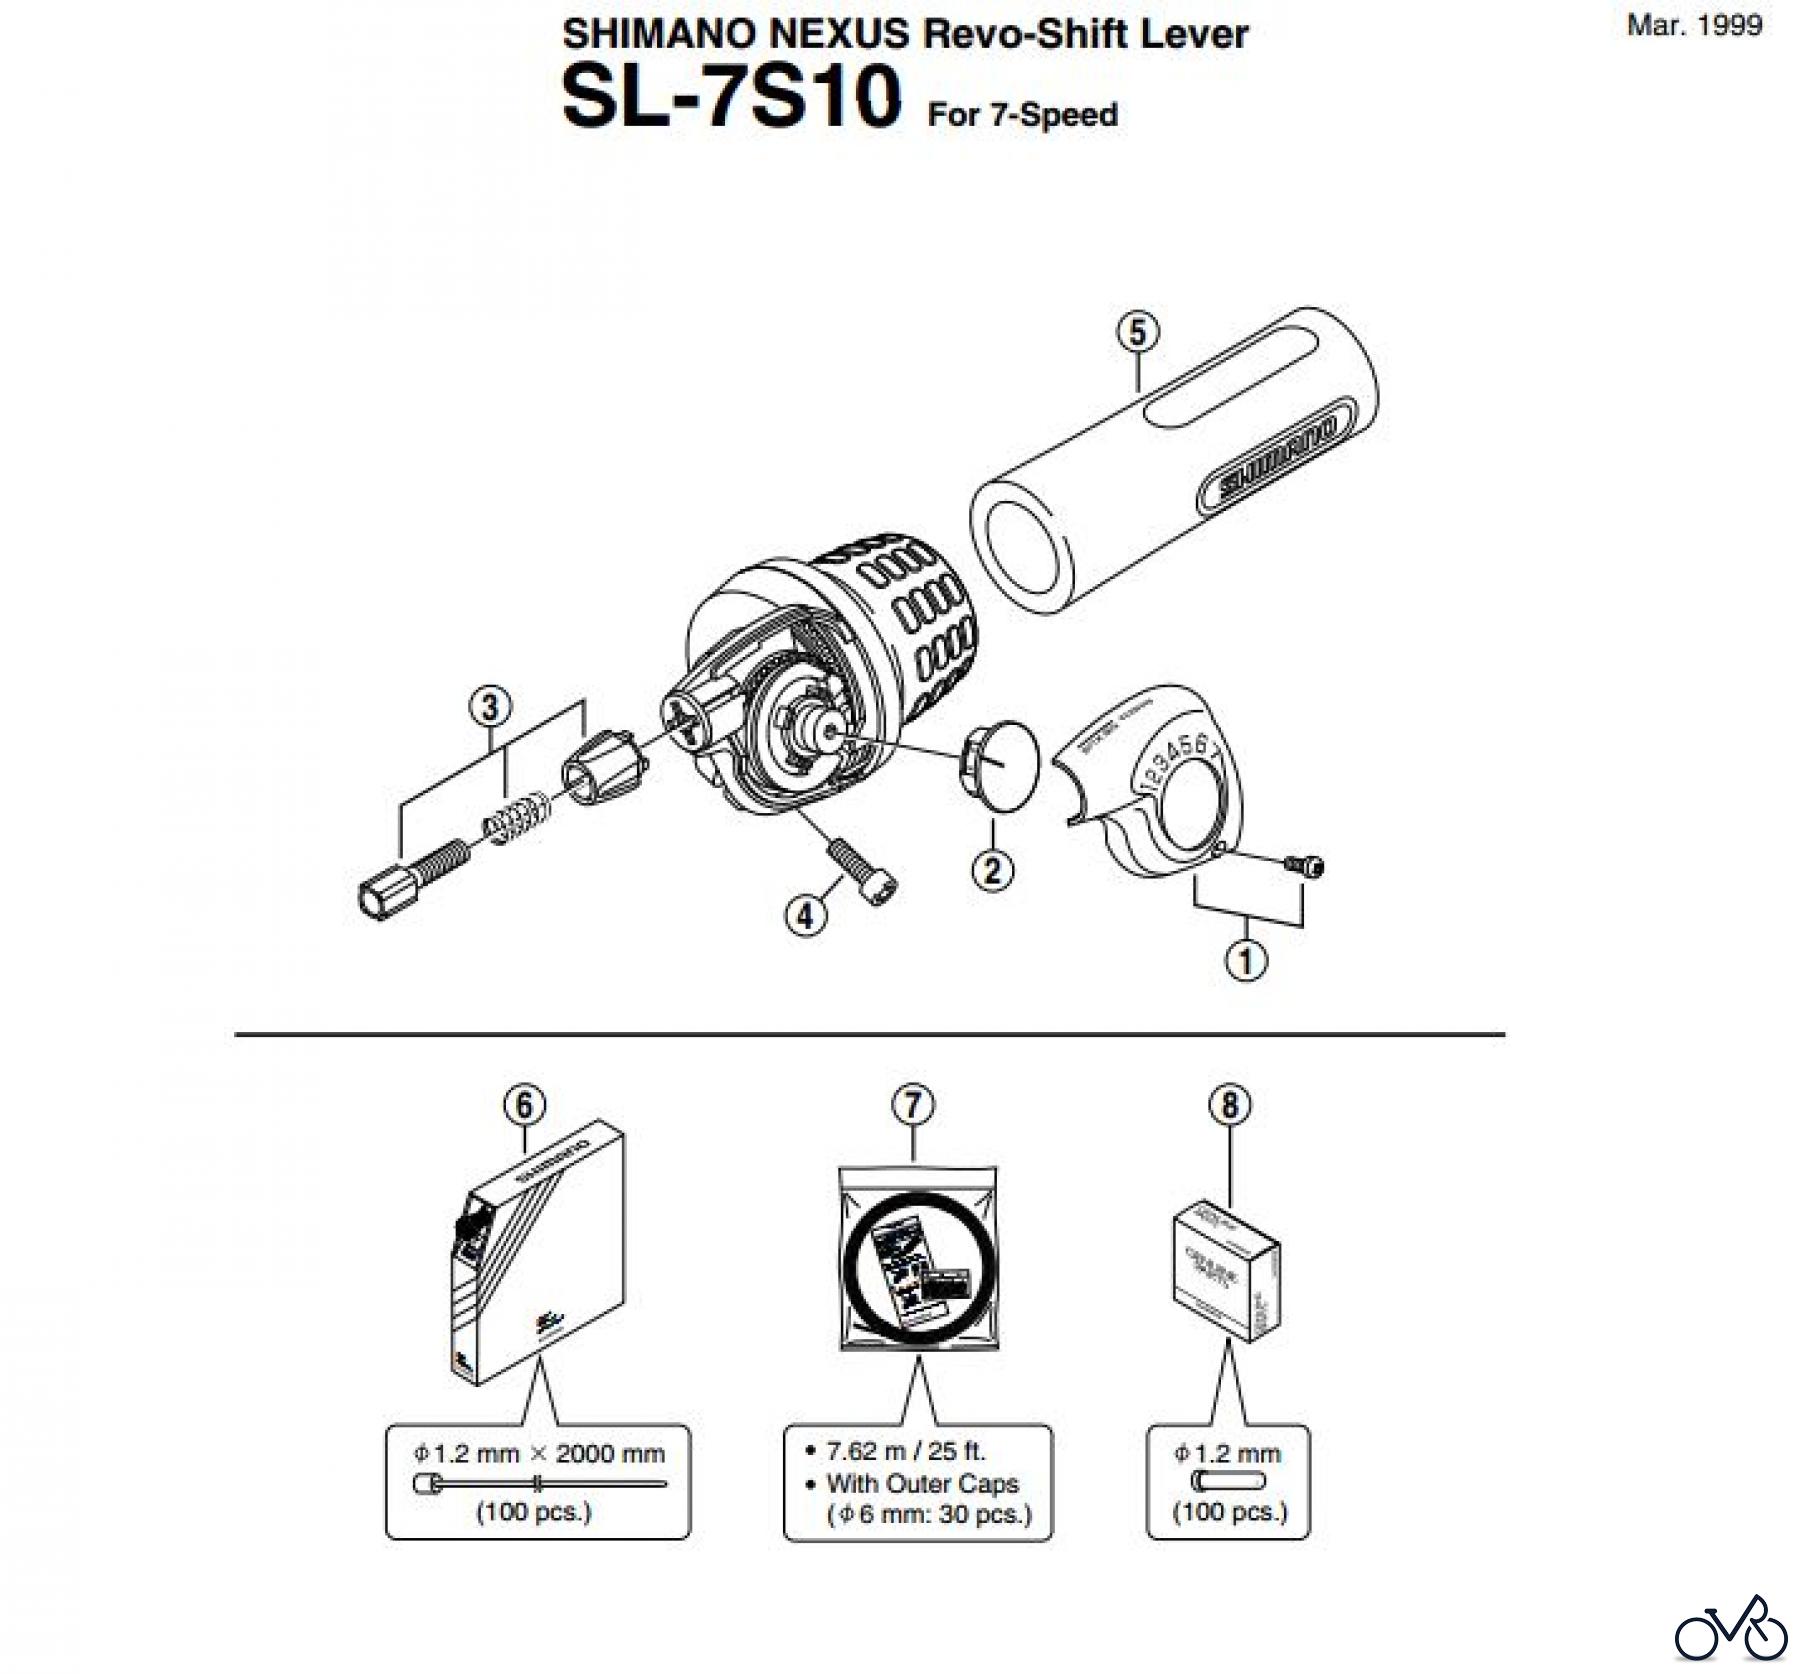  Shimano SL Shift Lever - Schalthebel SL-7S10 SHIMANO NEXUS Revo-Shift Lever